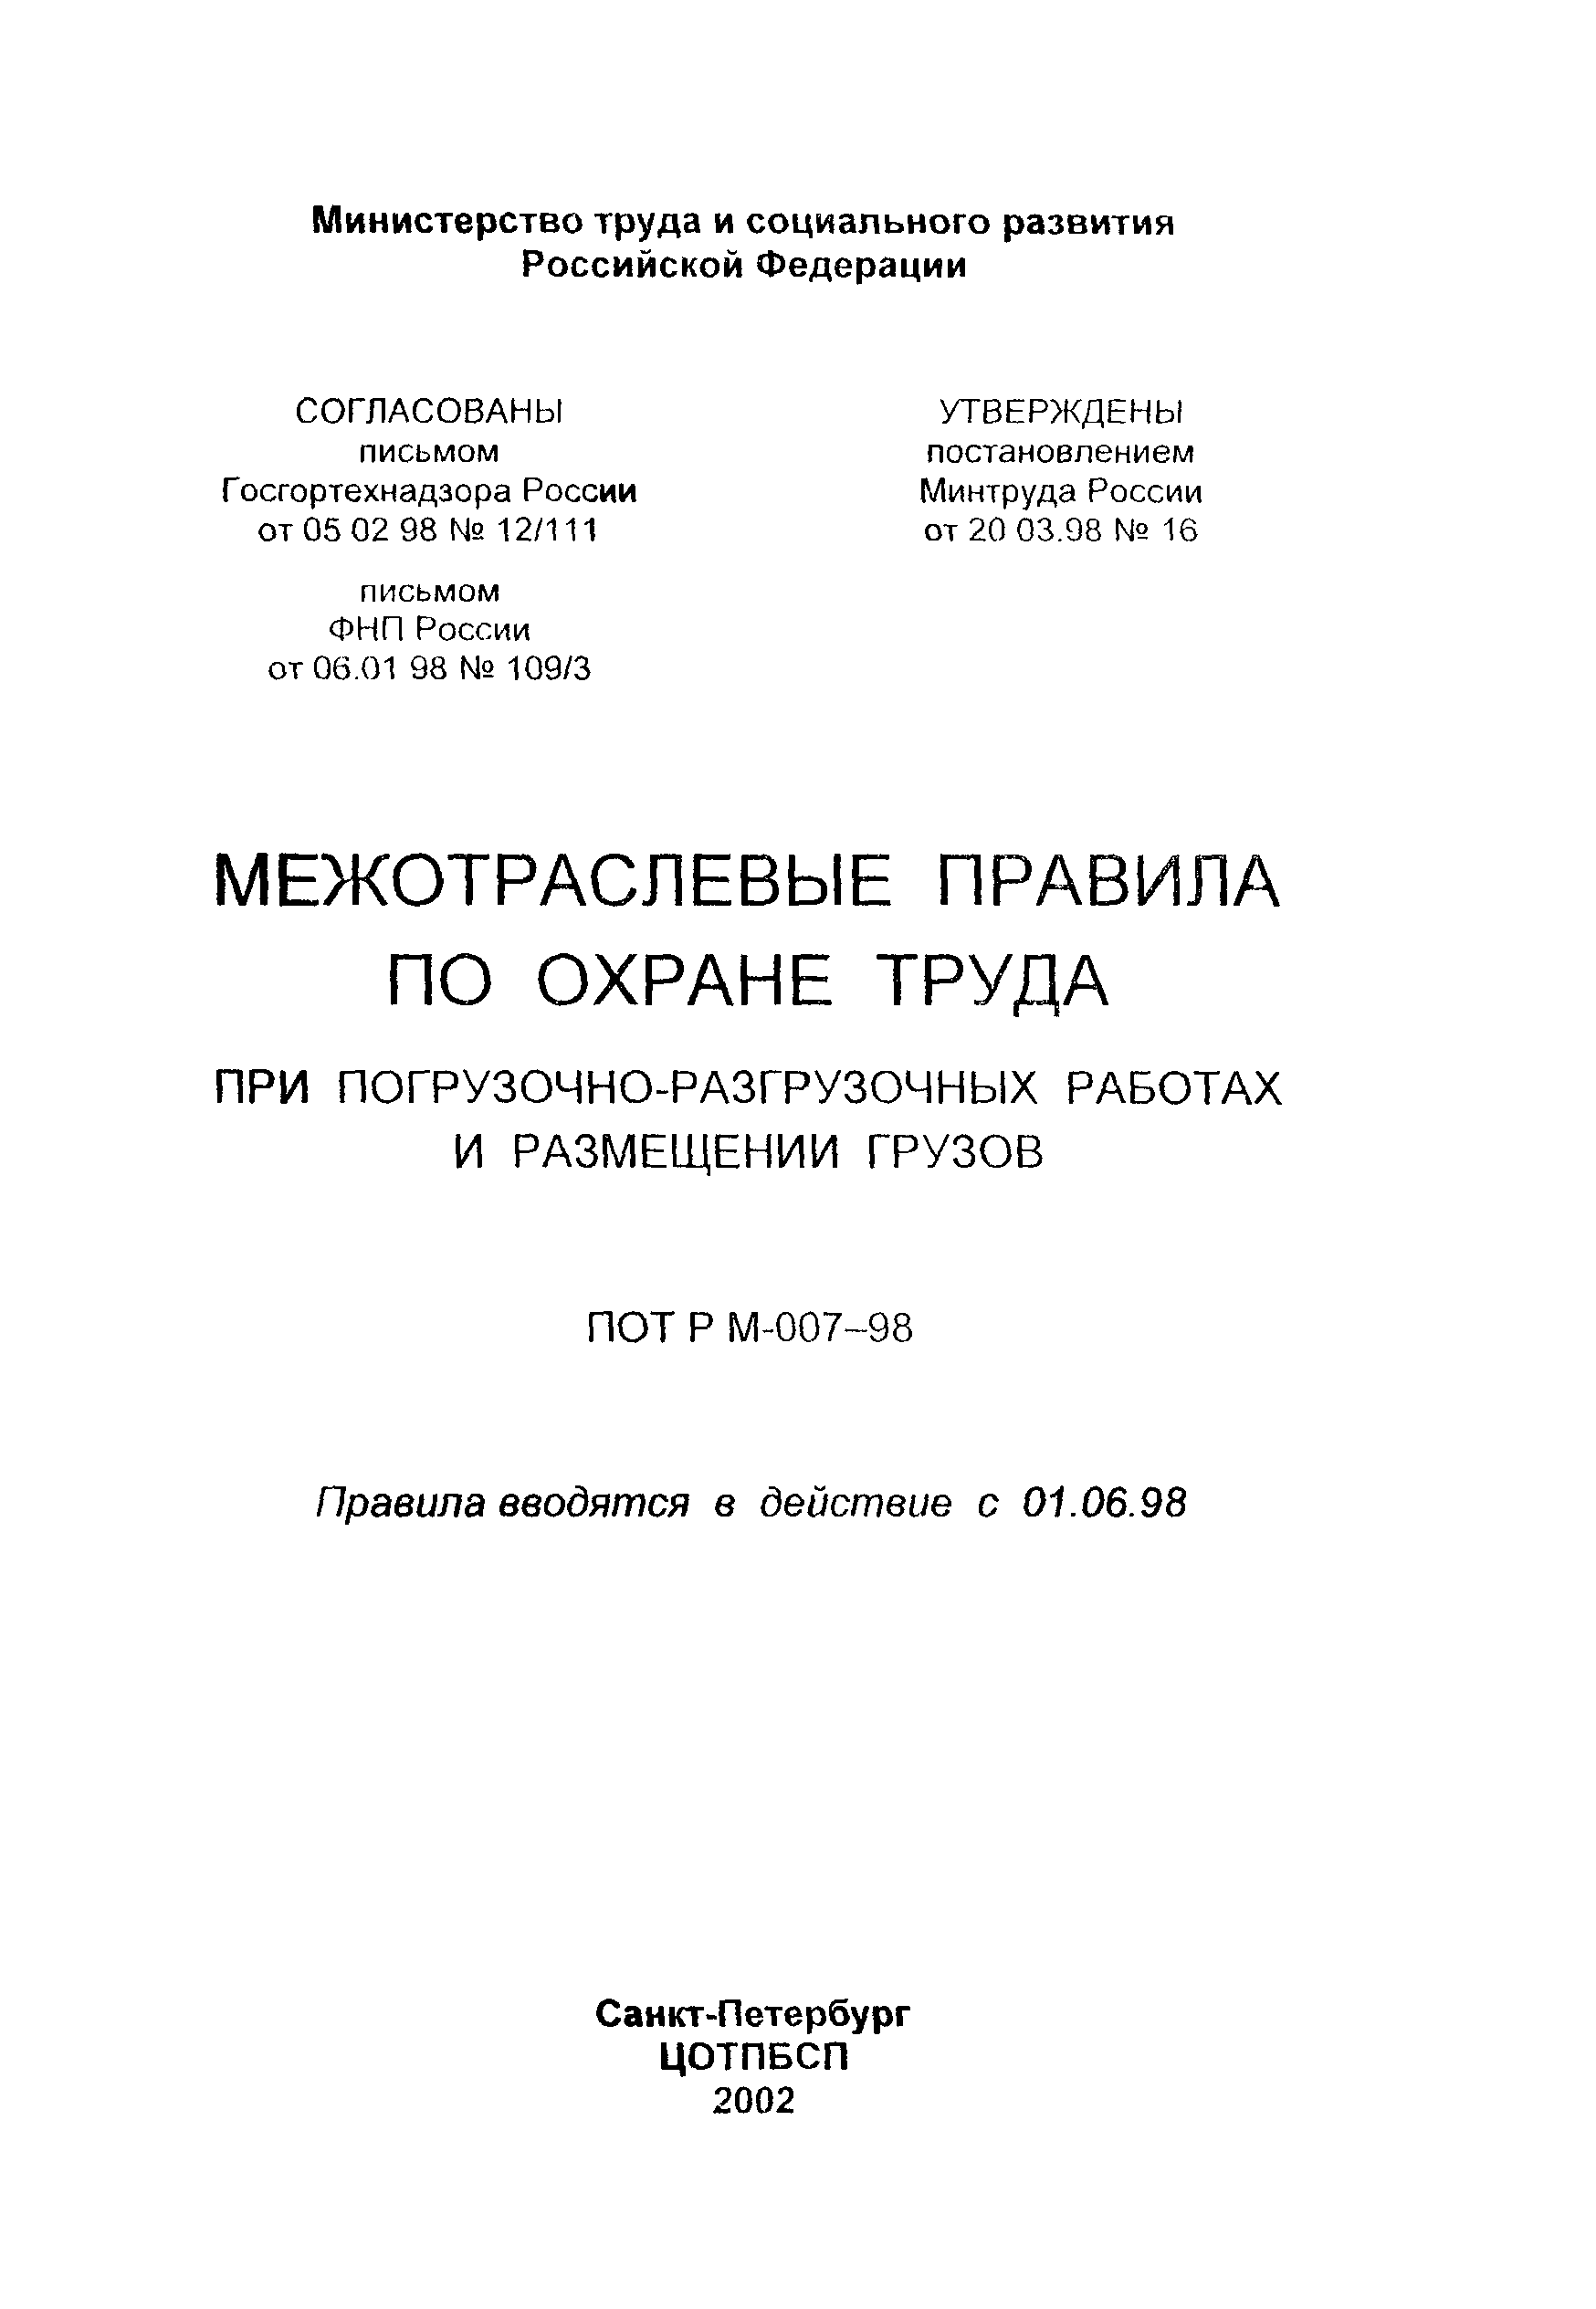 ПОТ Р М-007-98